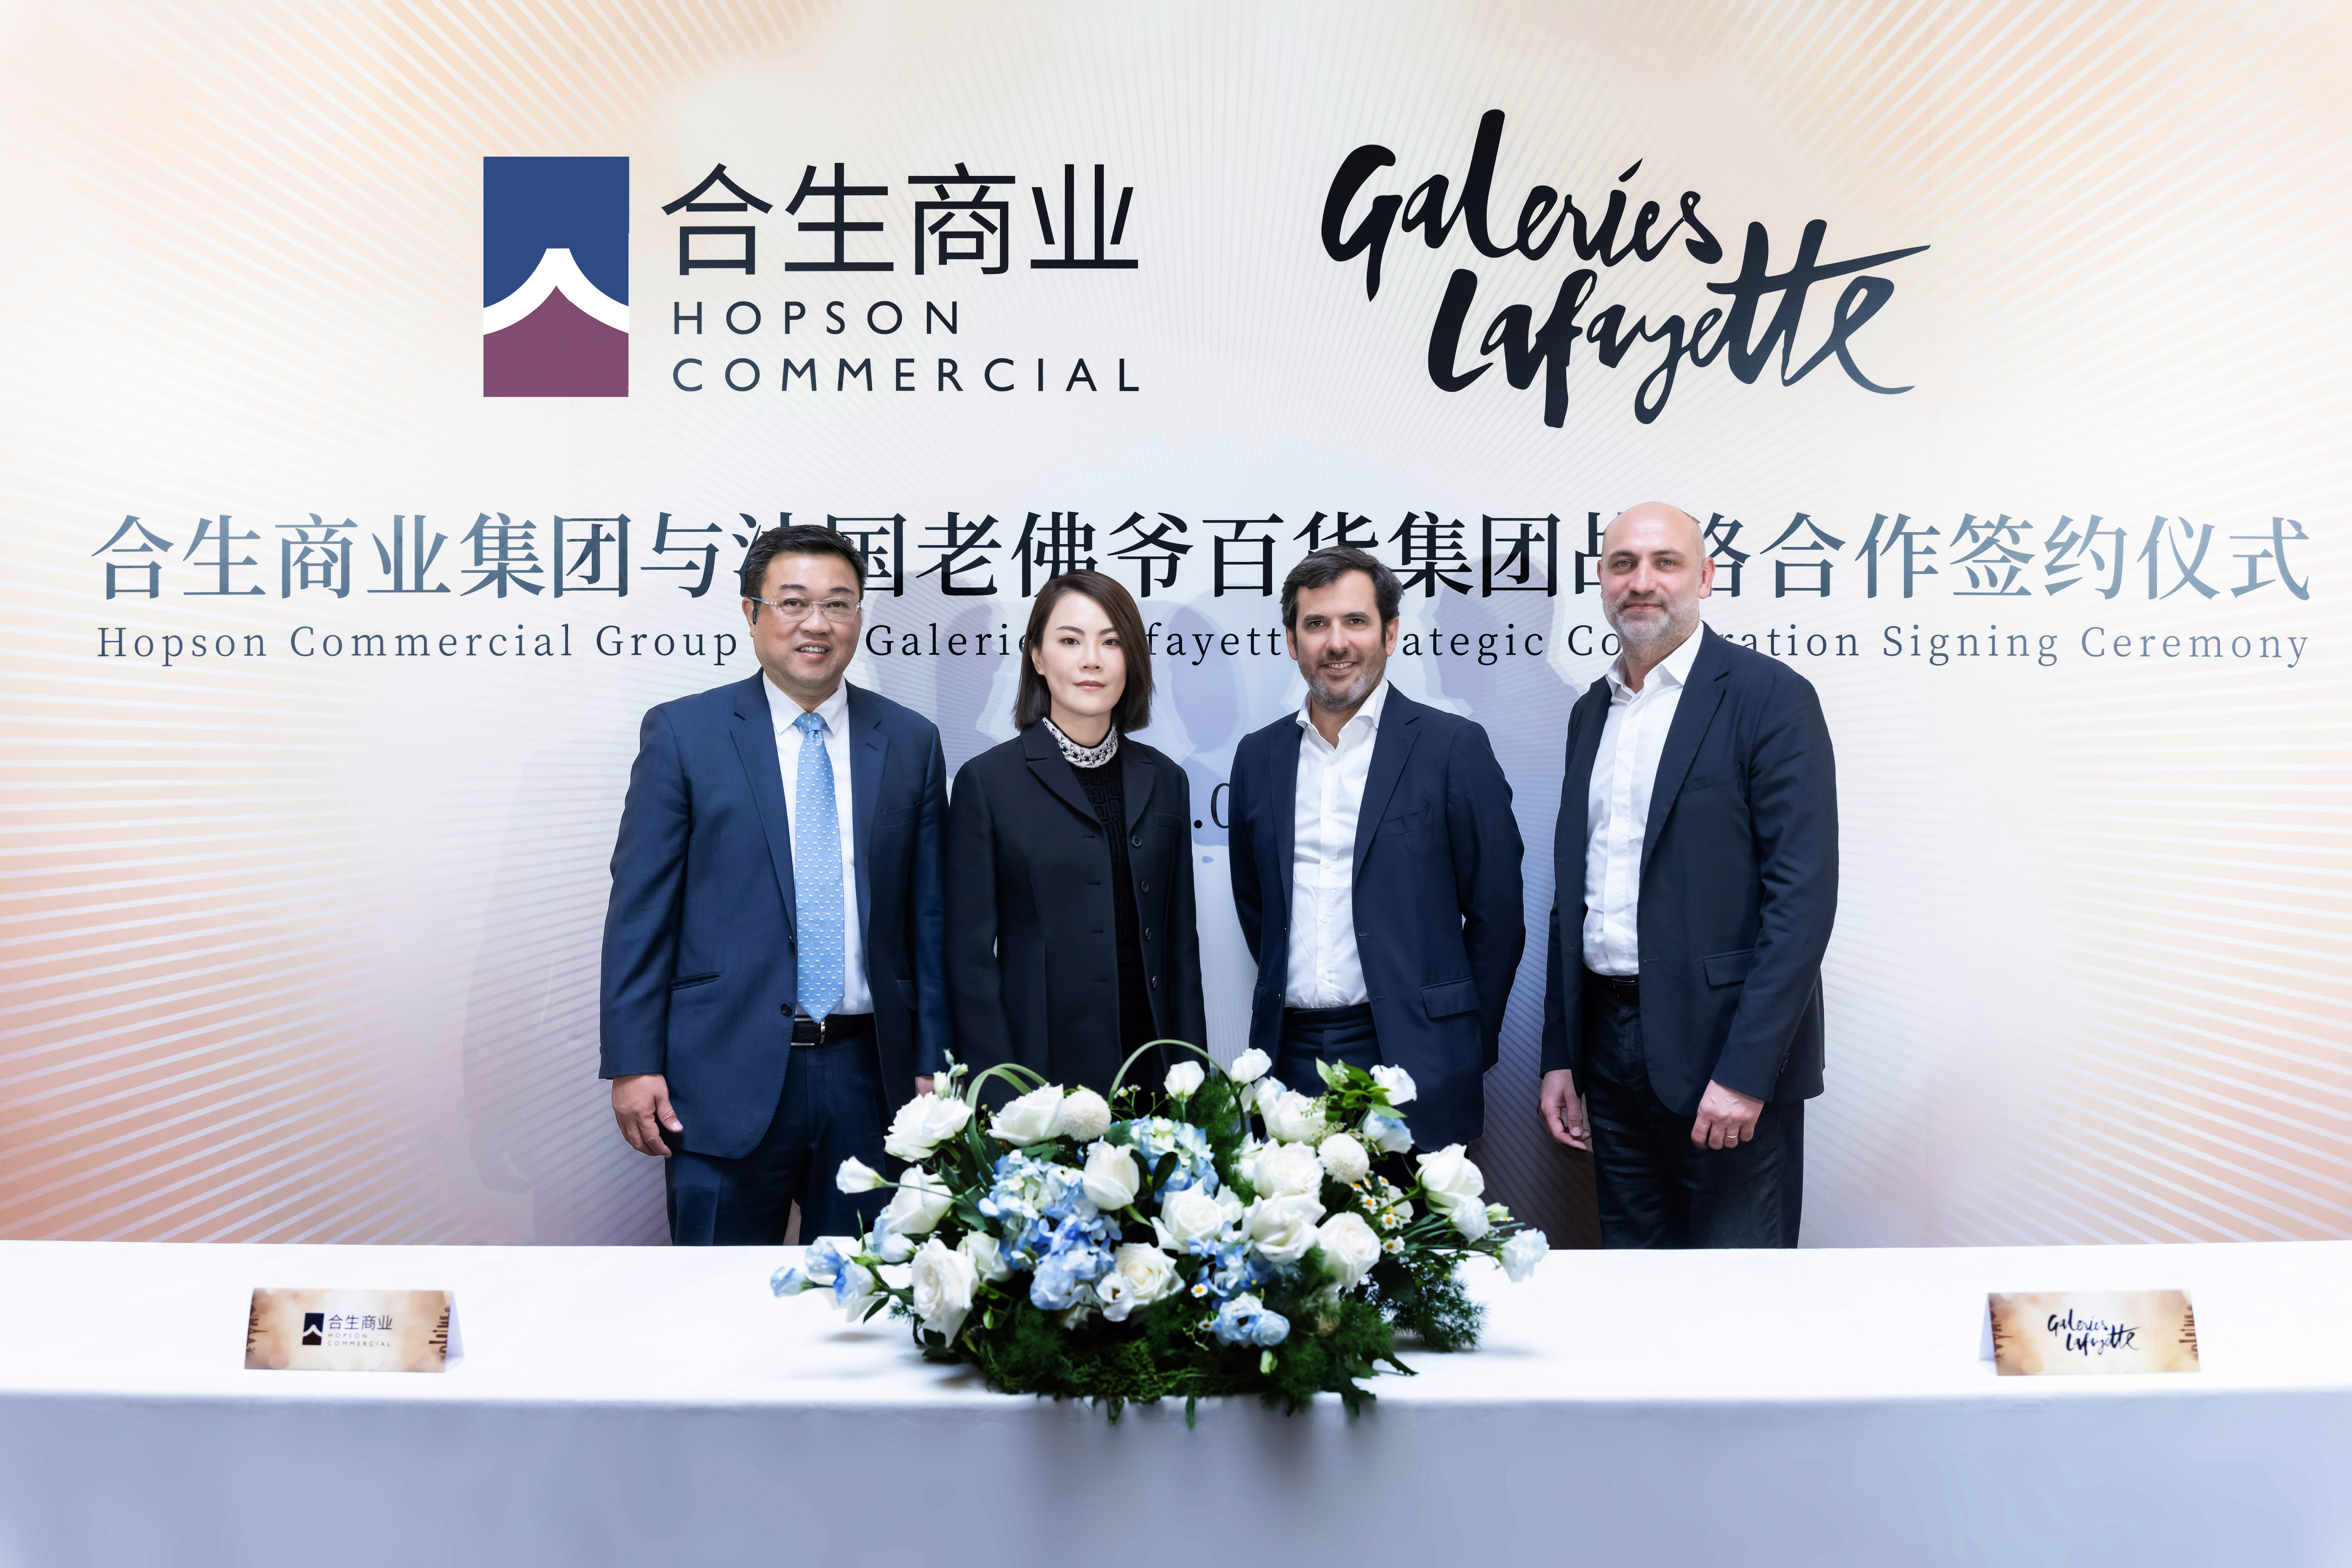 老佛爷百货在中国有了新伙伴：与合生商业集团成立合资公司，加速拓展中国市场